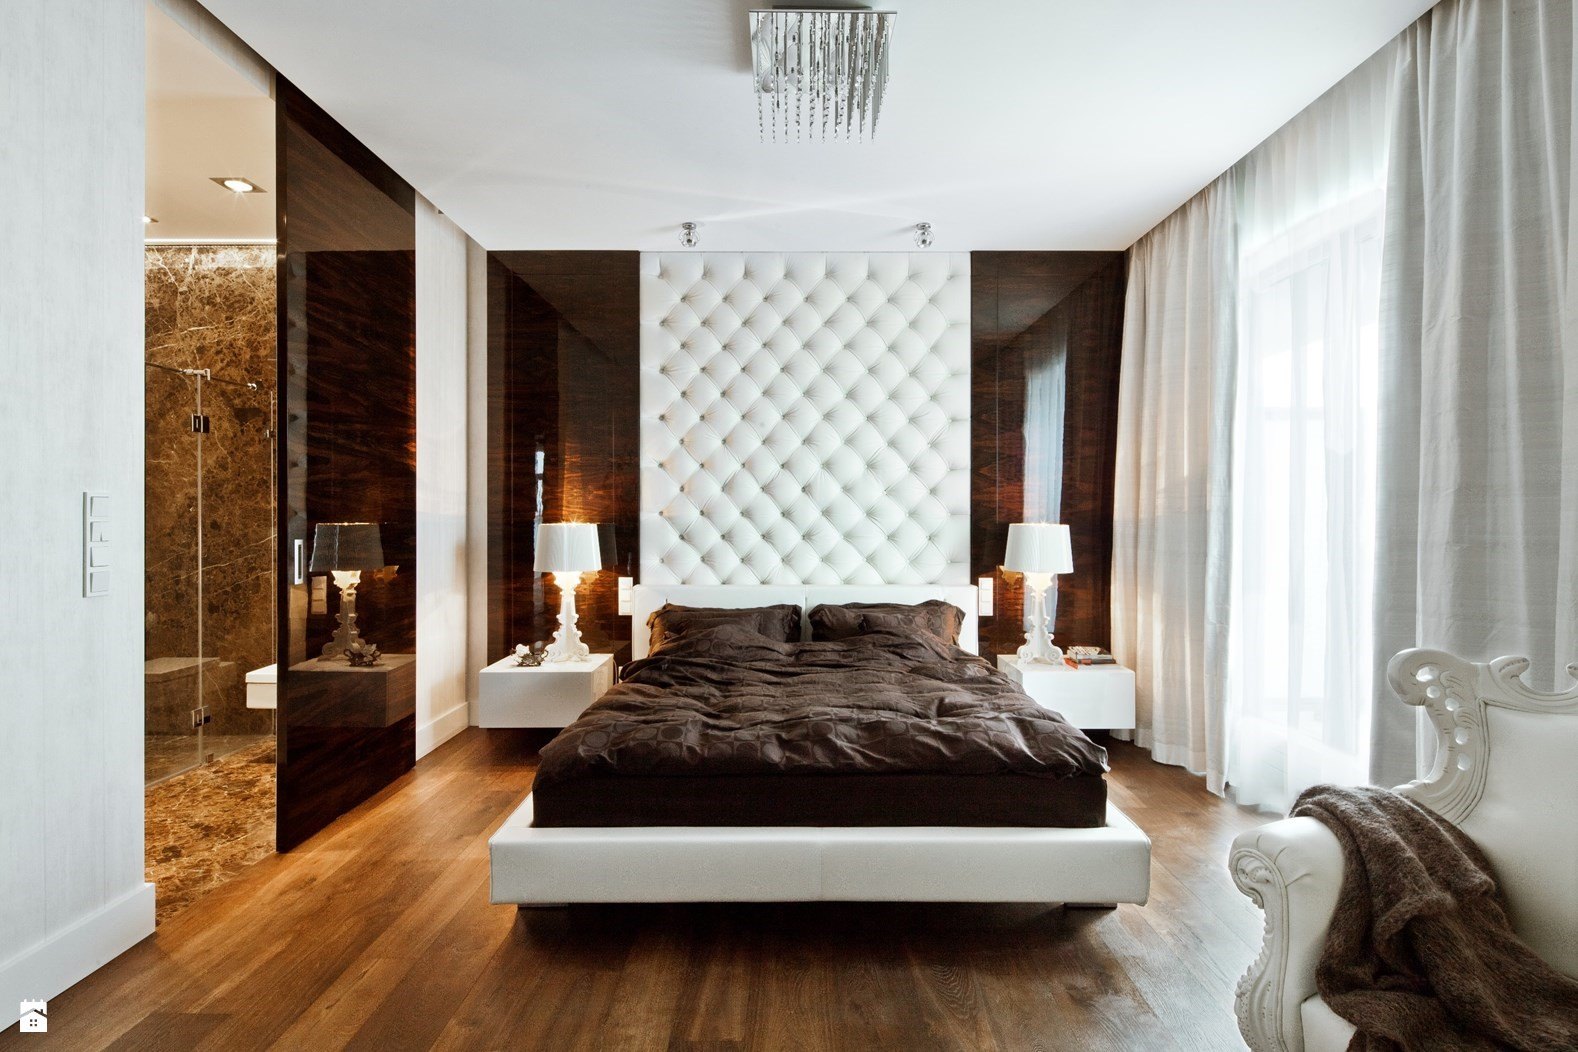 غرفة مختلطة بين الحديثة والكلاسيكية مع أرضية خشبية والجمع بين اللونين البني والأبيض يجعلك تنبهر بجمالها